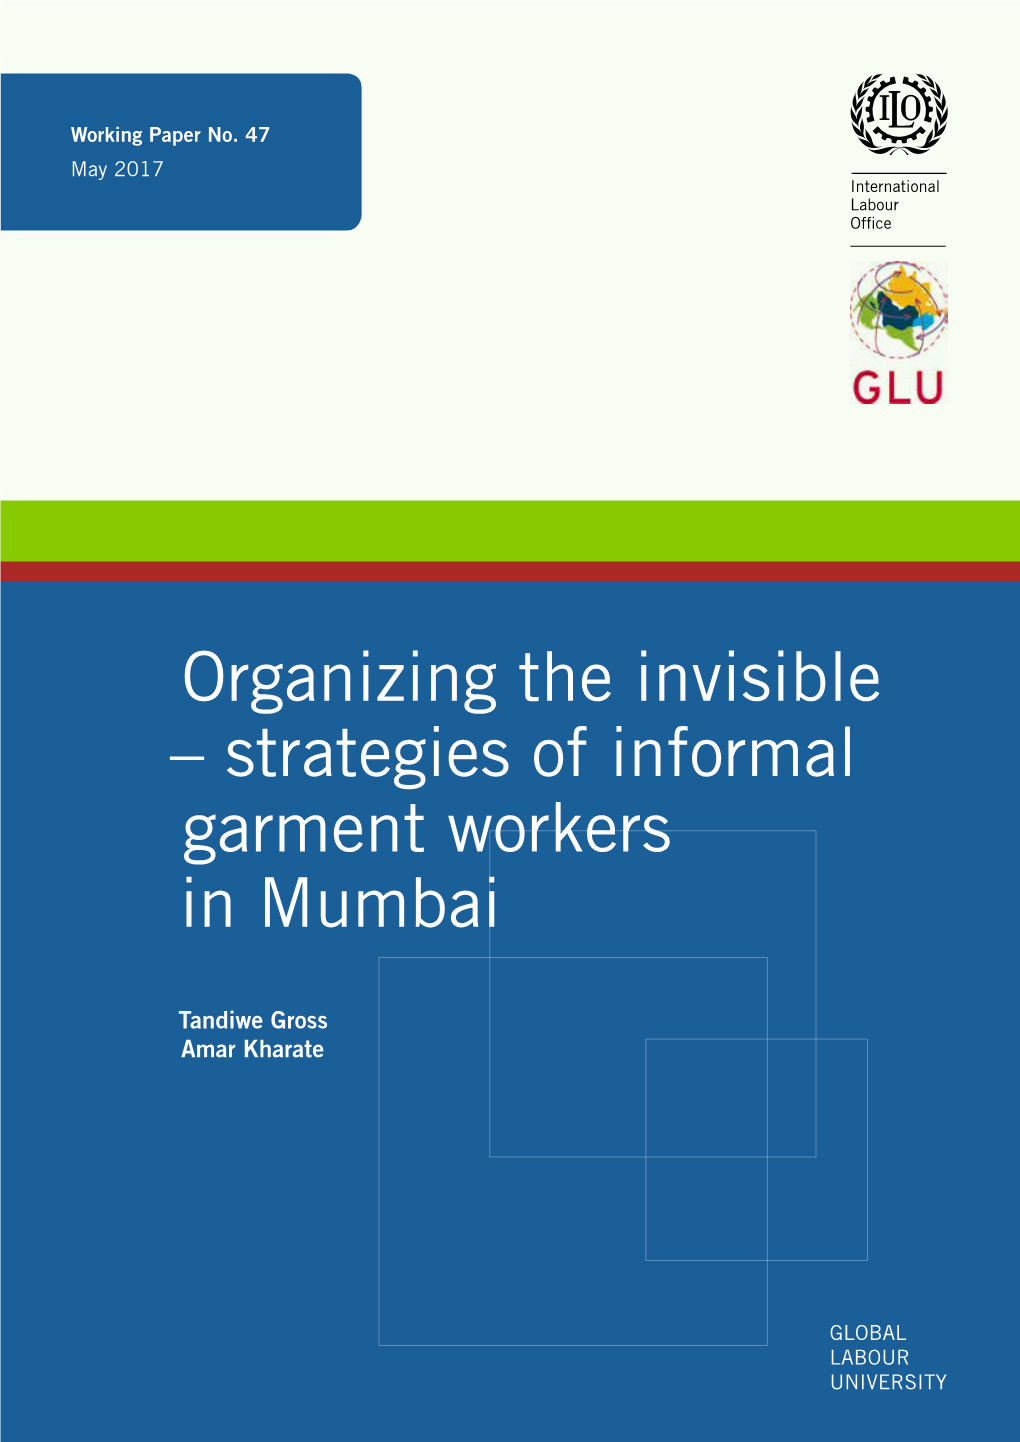 Strategies of Informal Garment Workers in Mumbai